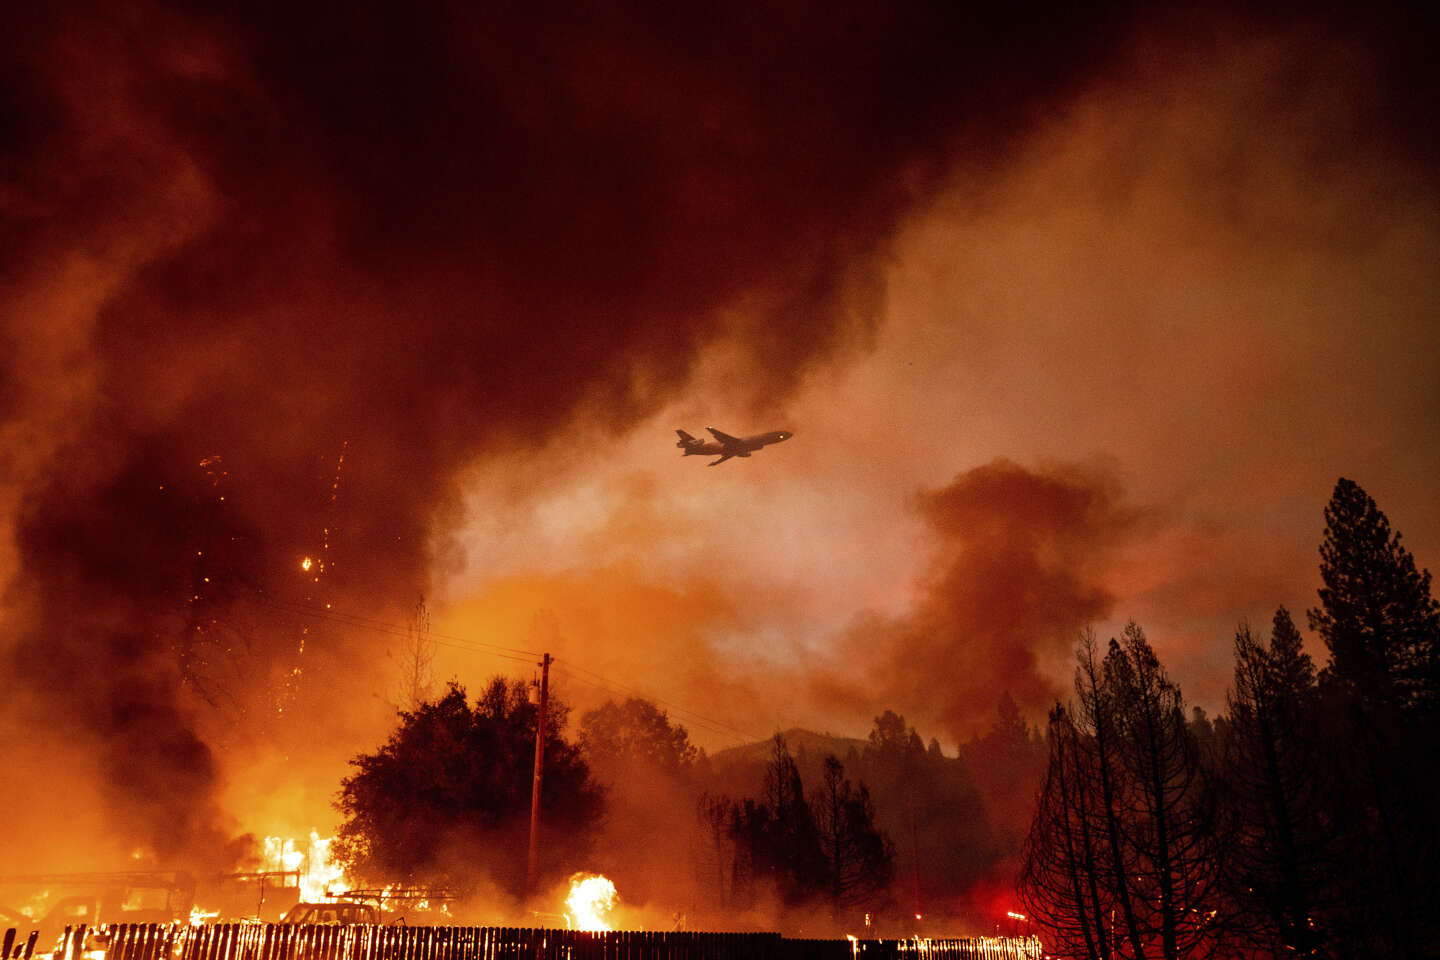 Riesenbrände, Phänomene, die sich unter dem Einfluss des Klimawandels vermehren